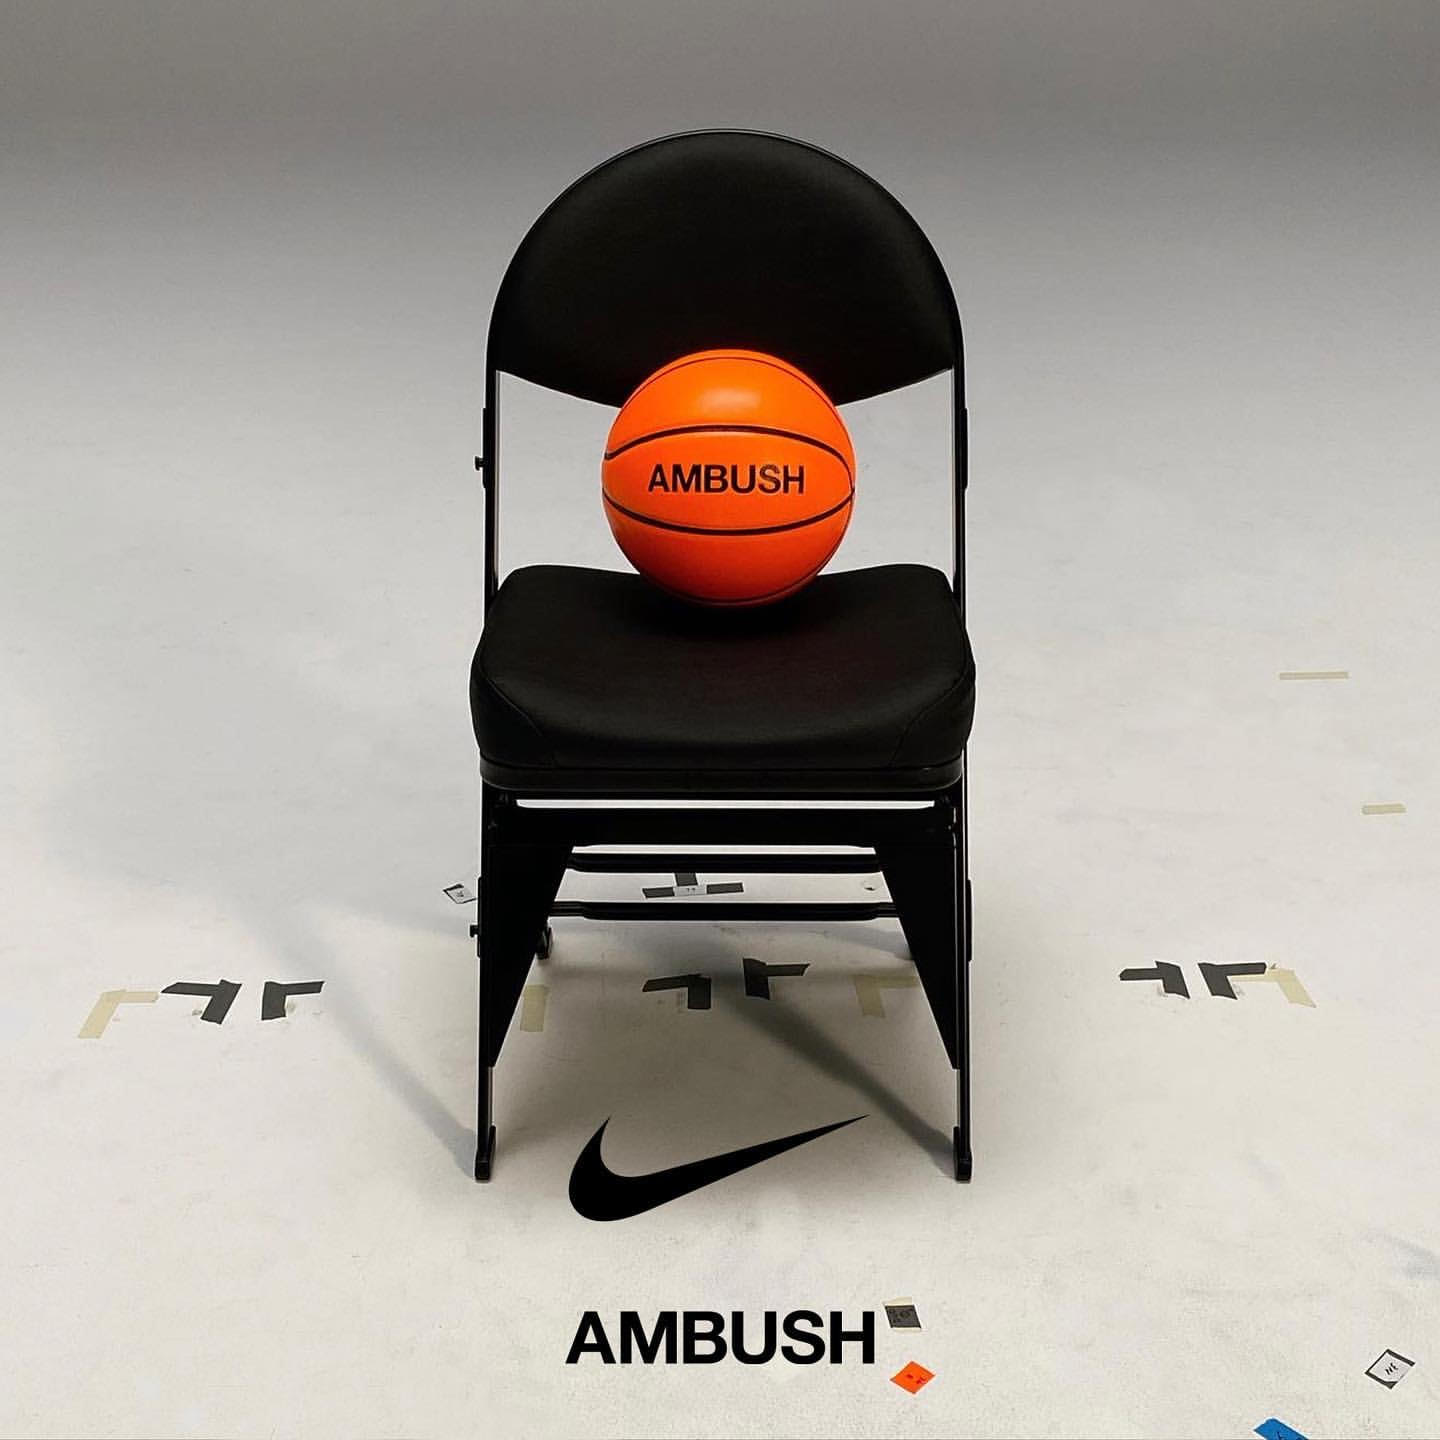 アンブッシュ ナイキ トリプルネーム コラボ アパレル apparel AMBUSH Nike NBA Collab Collection Basketball image